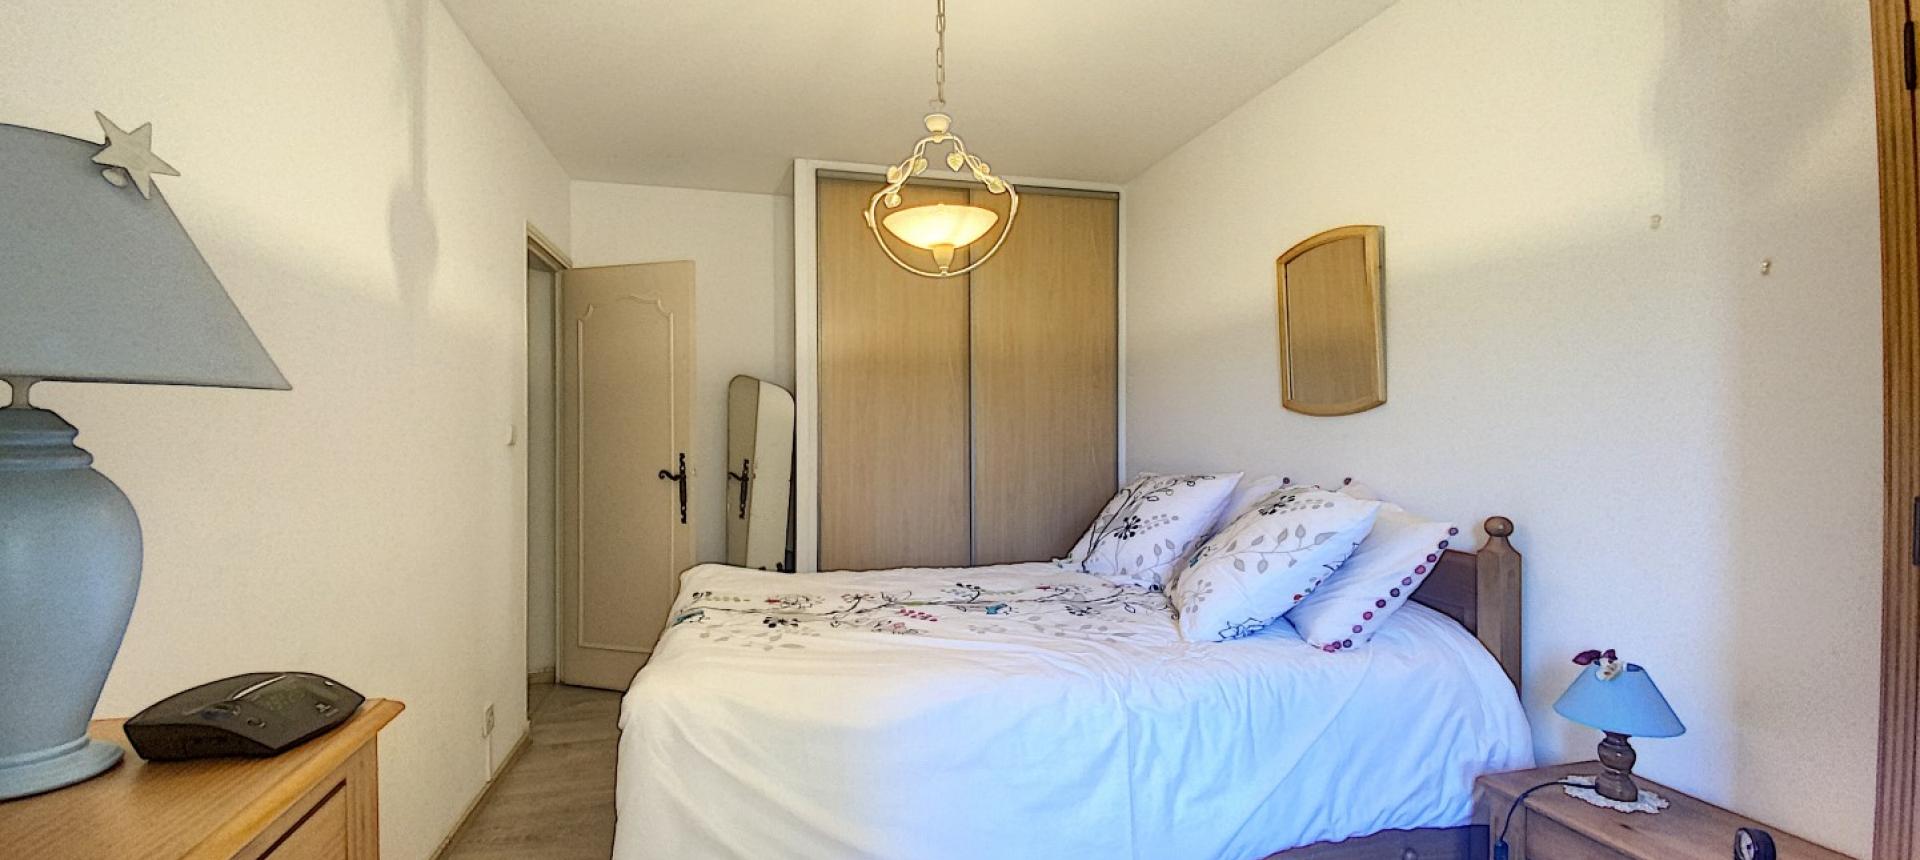 En Corse à Ajaccio, vente d'un appartement de type F3 de 70 m²